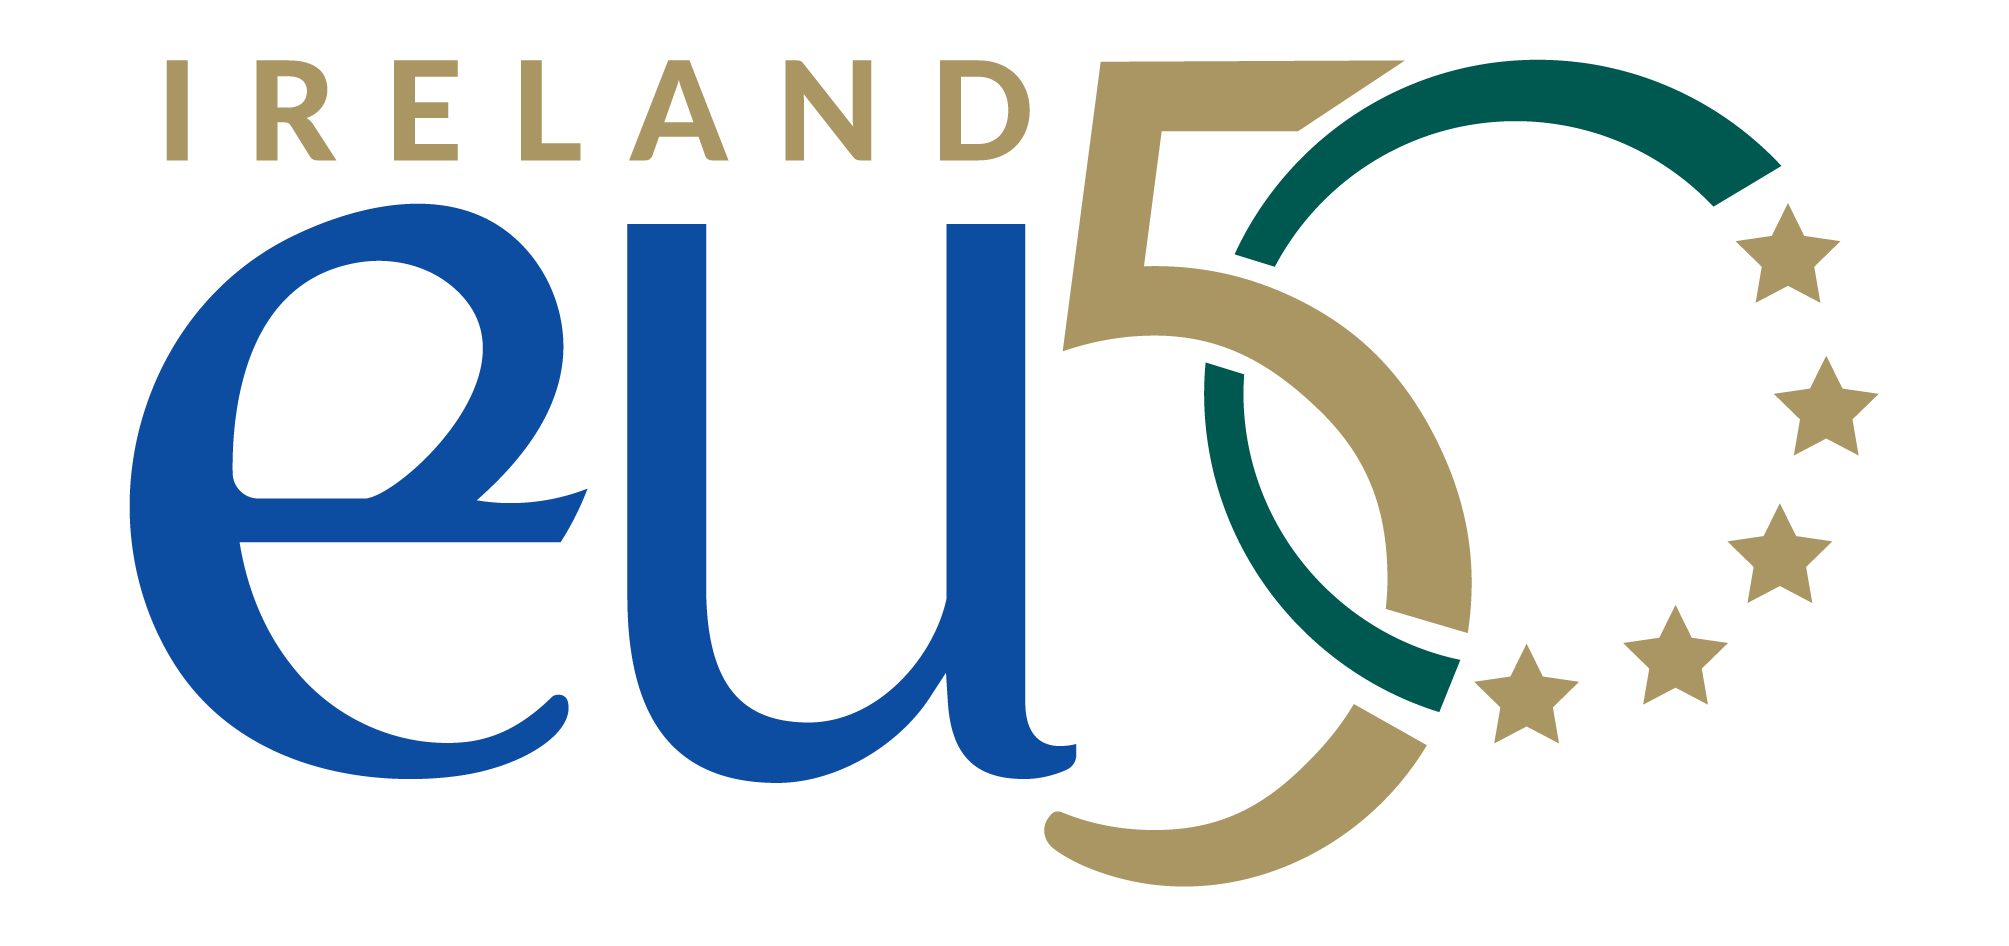 EU50 logo